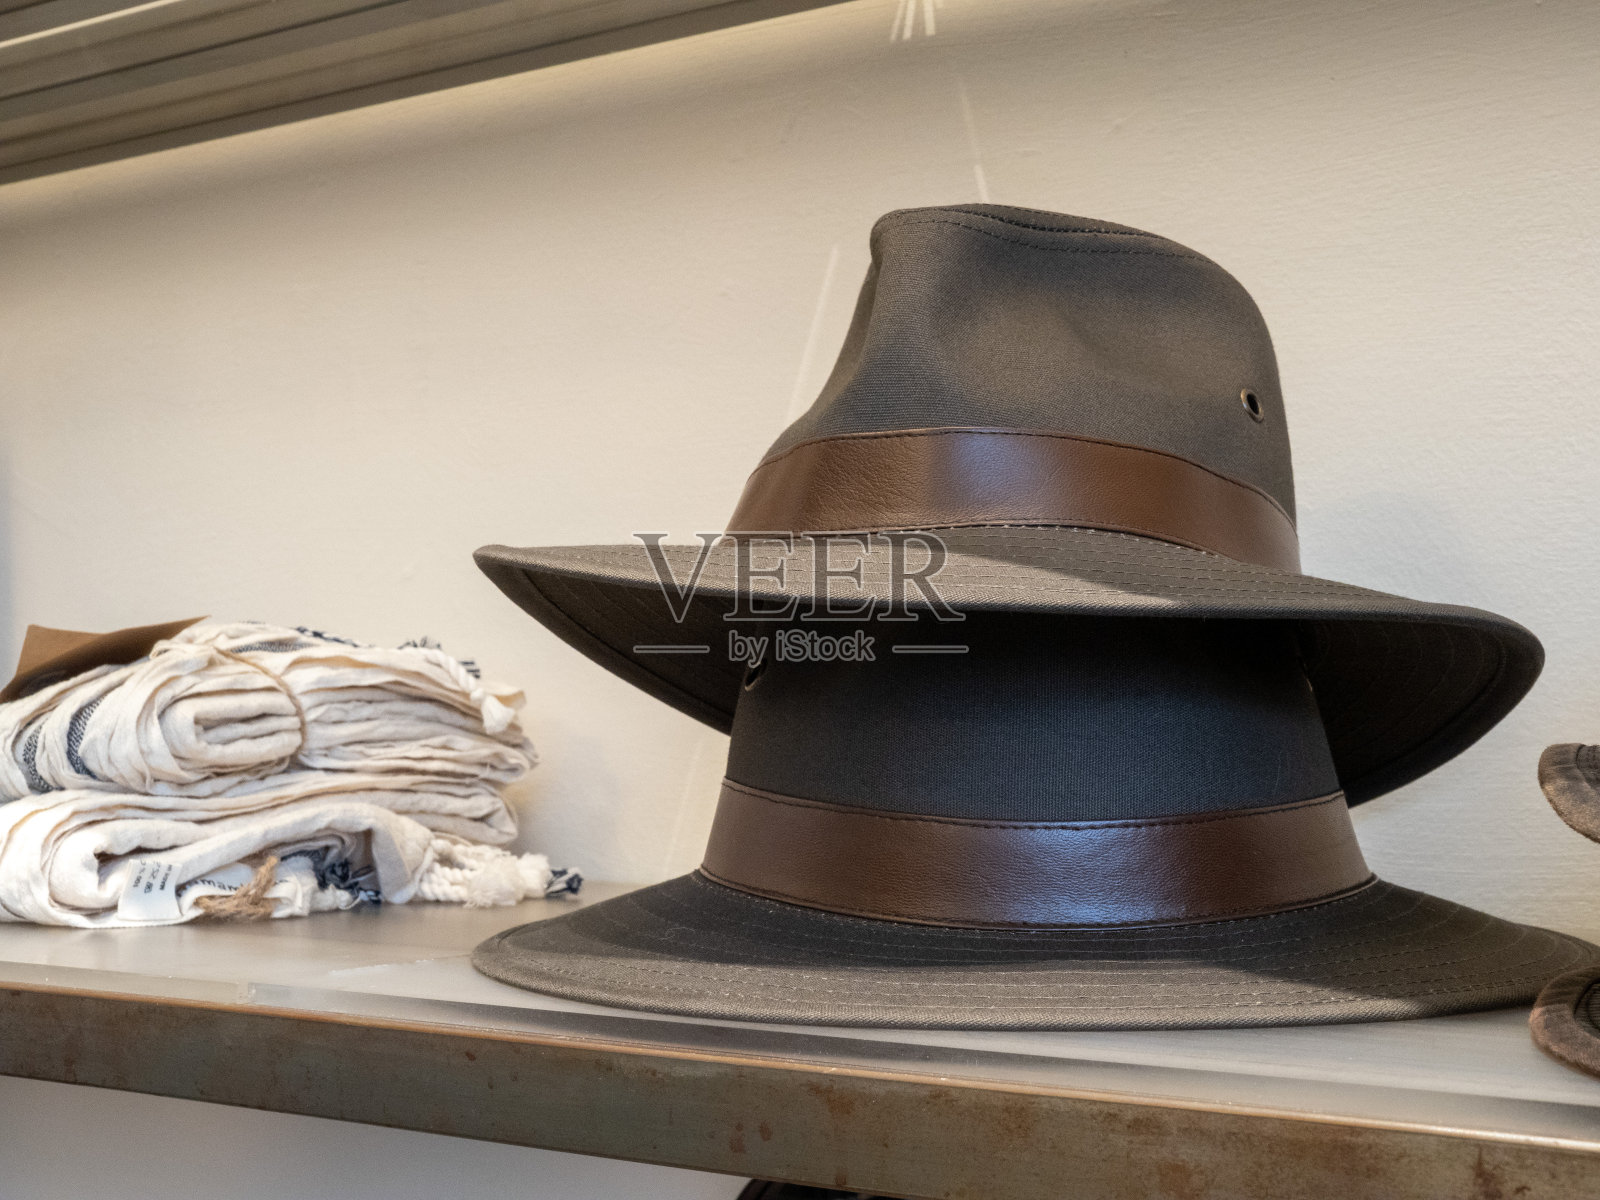 在百货商店的服装区展示的两顶软呢帽照片摄影图片